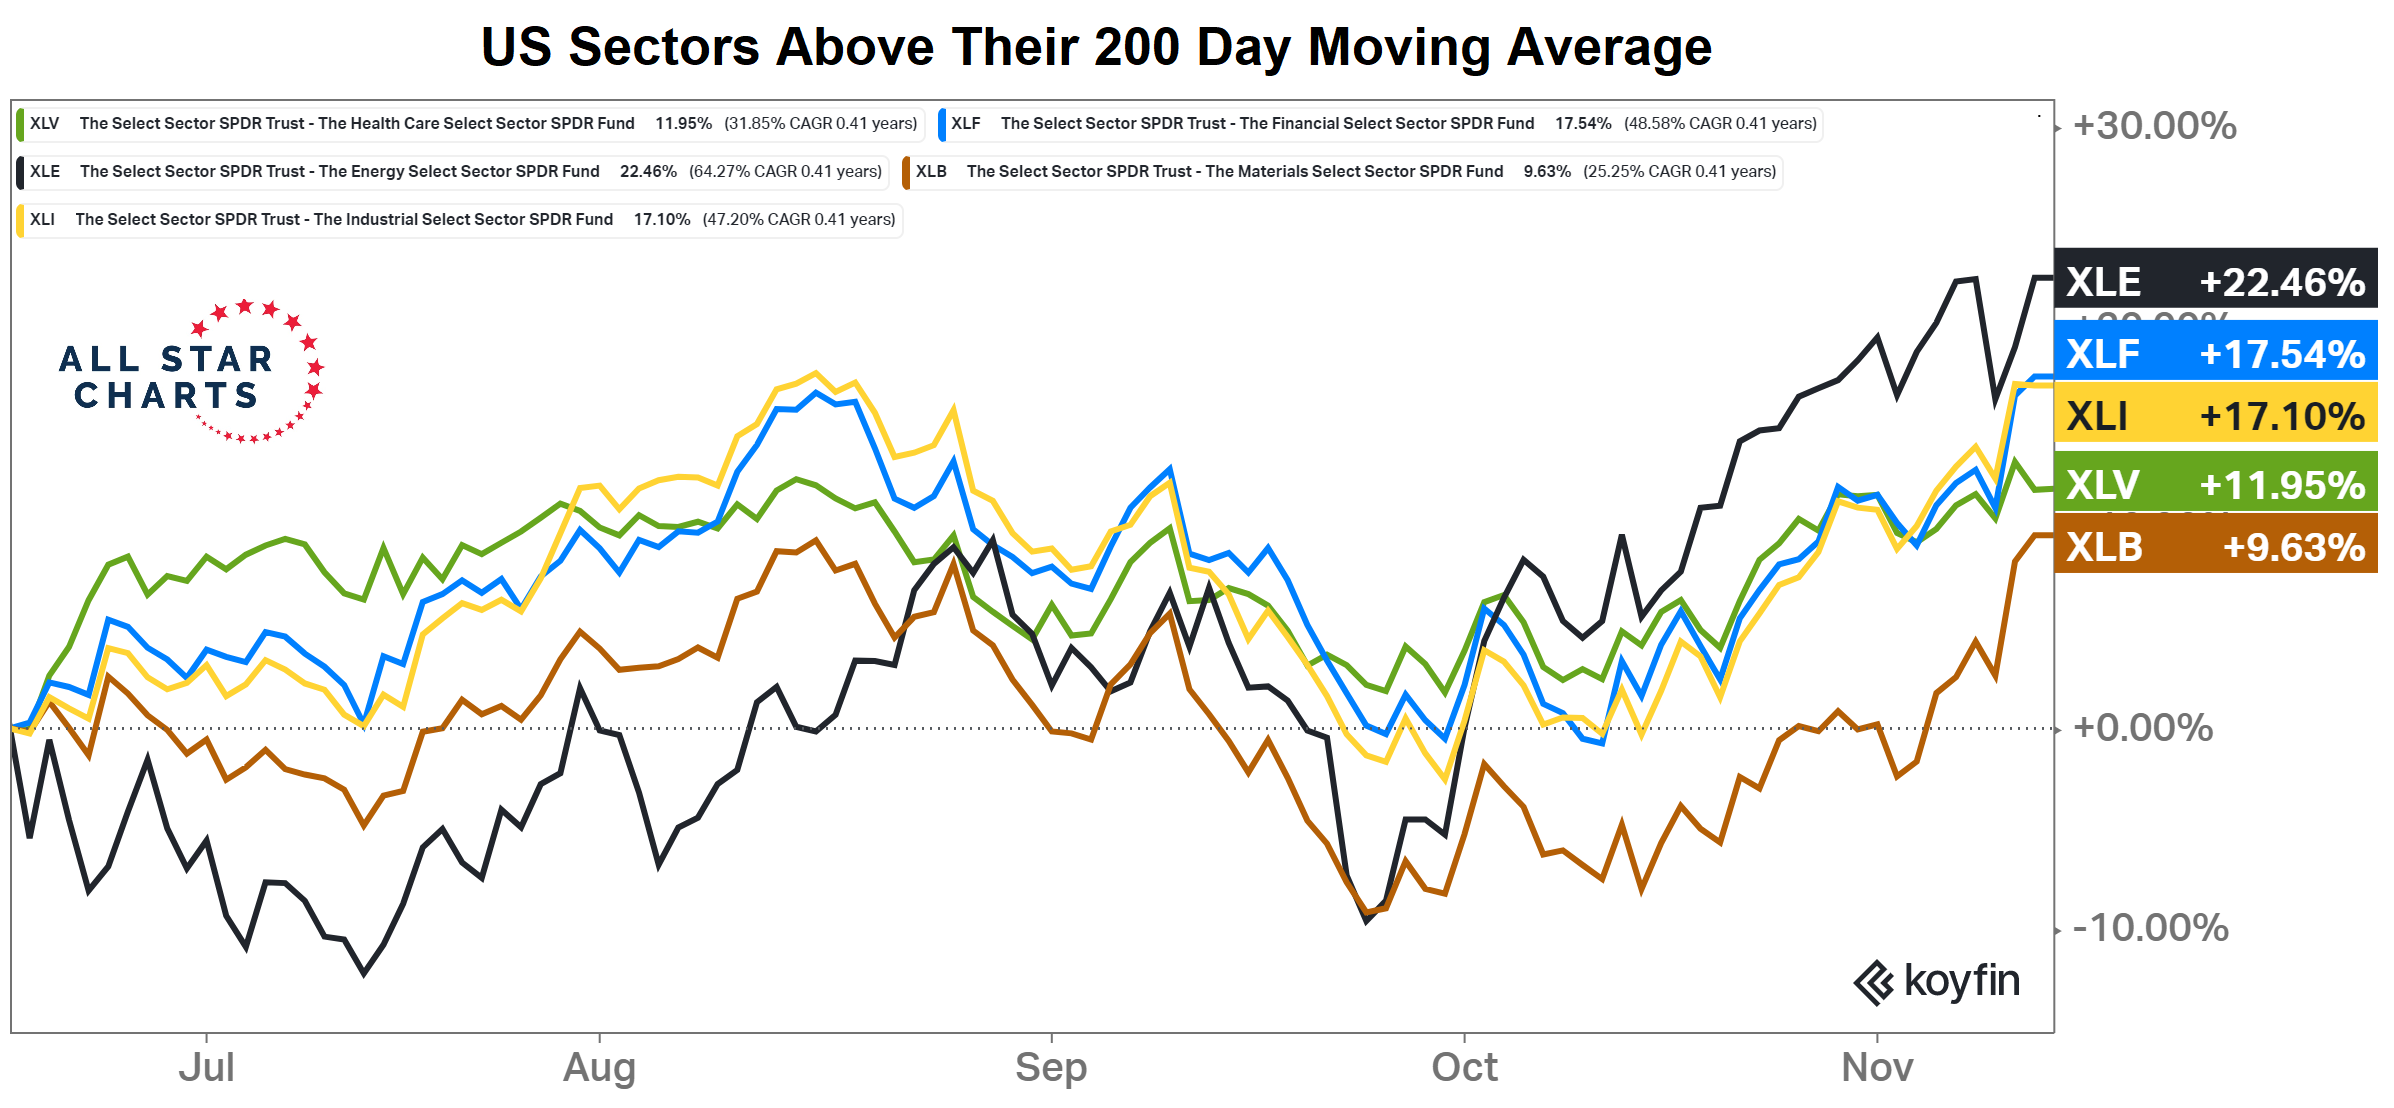 Sektorové indexy v rámci S&P 500 nad 200denním průměrem